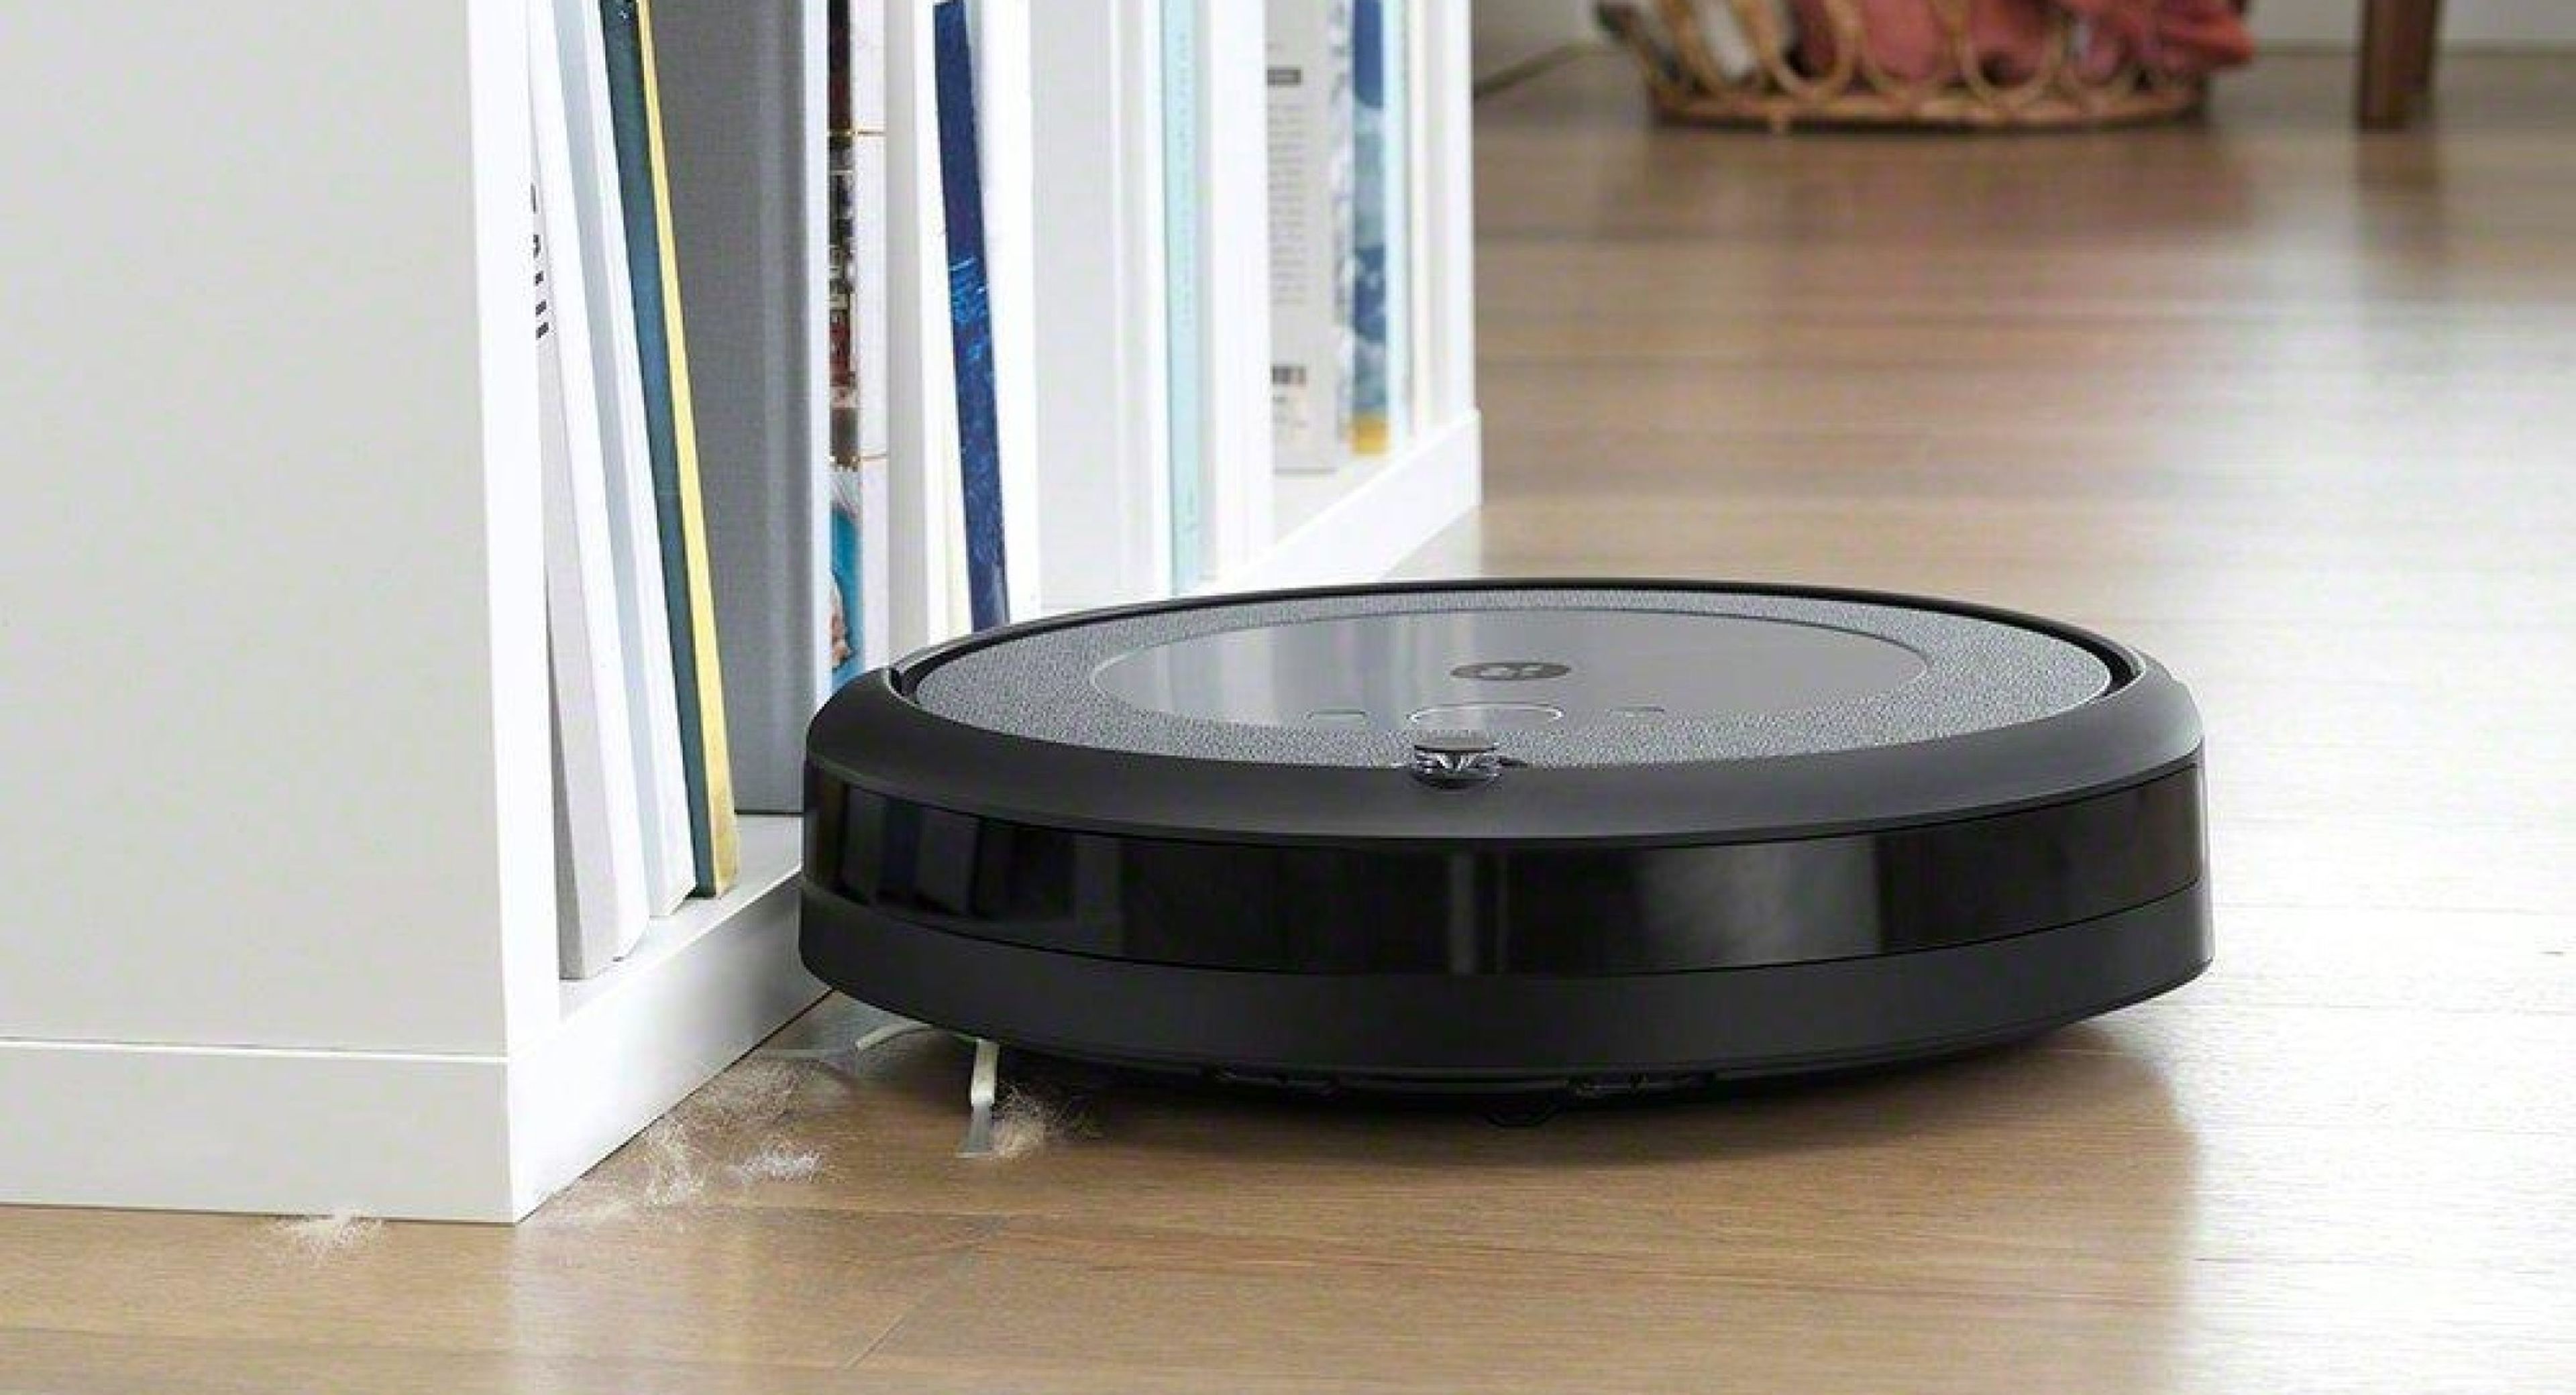 Robot aspirador Roomba i3 con 90€ de descuento en